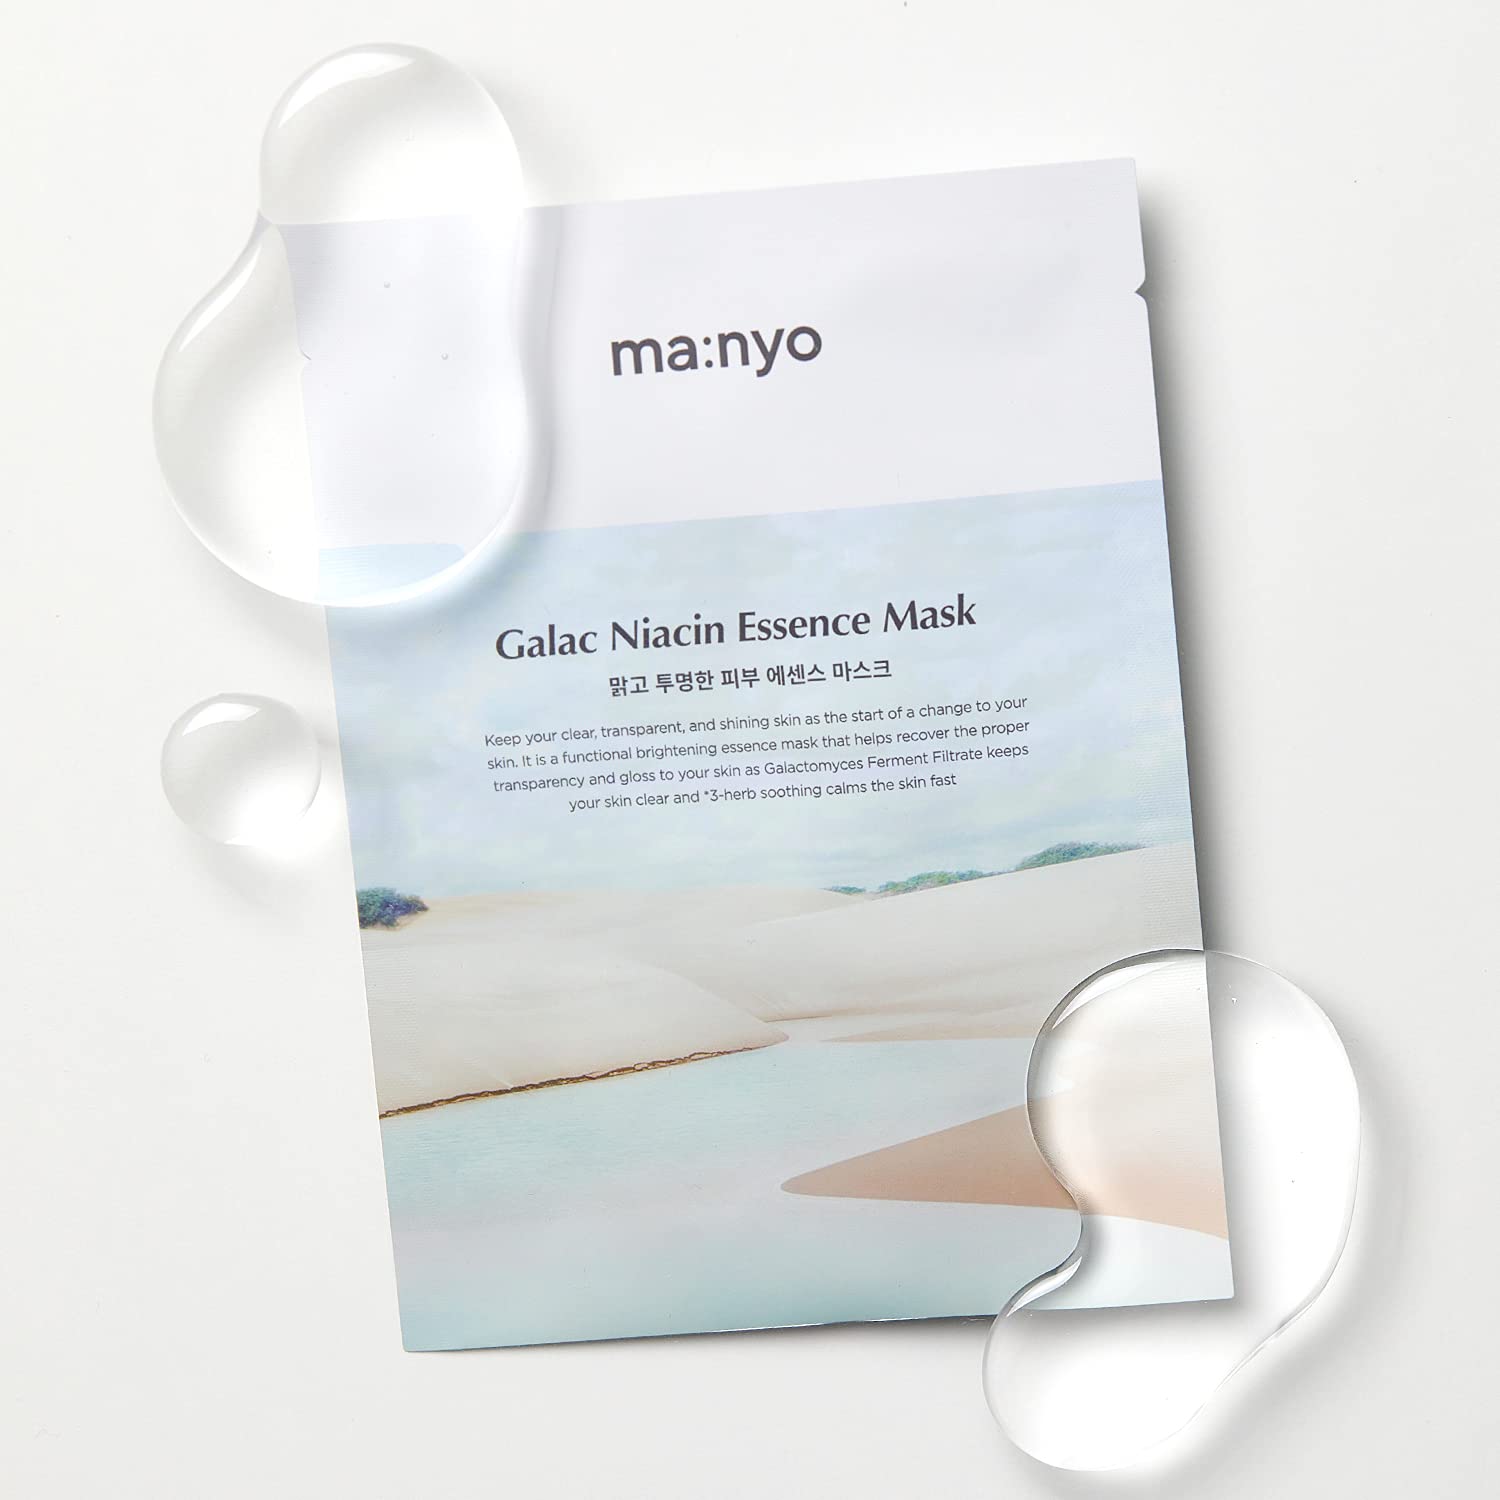 Manyo Factory Galac Niacin Essence Mask 30g, 1 Sheet